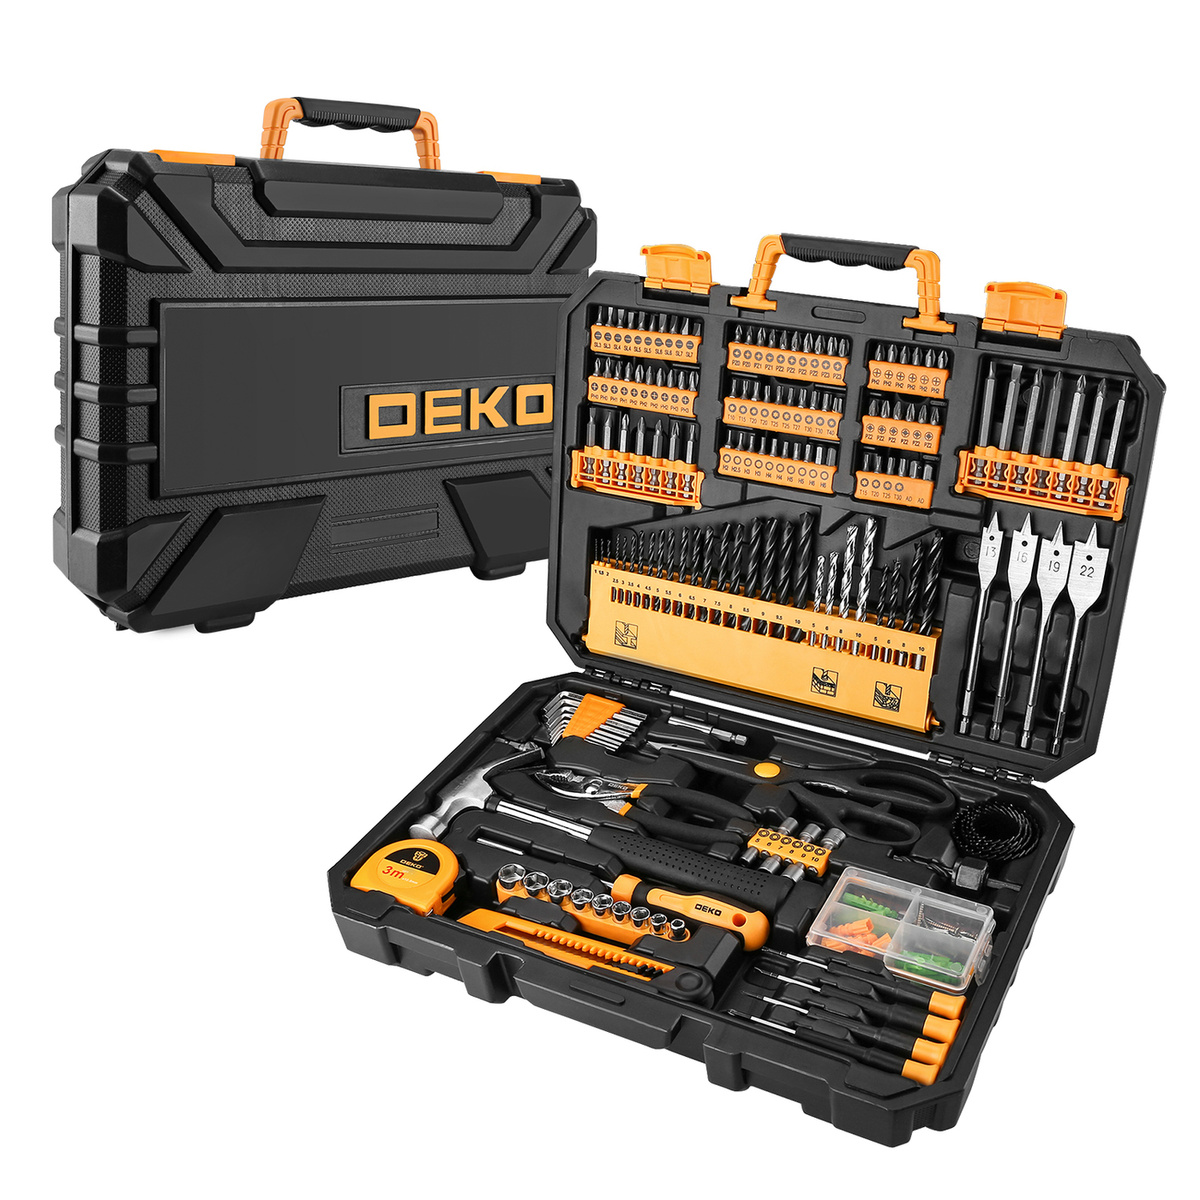  инструмента и оснастки в чемодане DEKO DKMT200 (200 предметов .